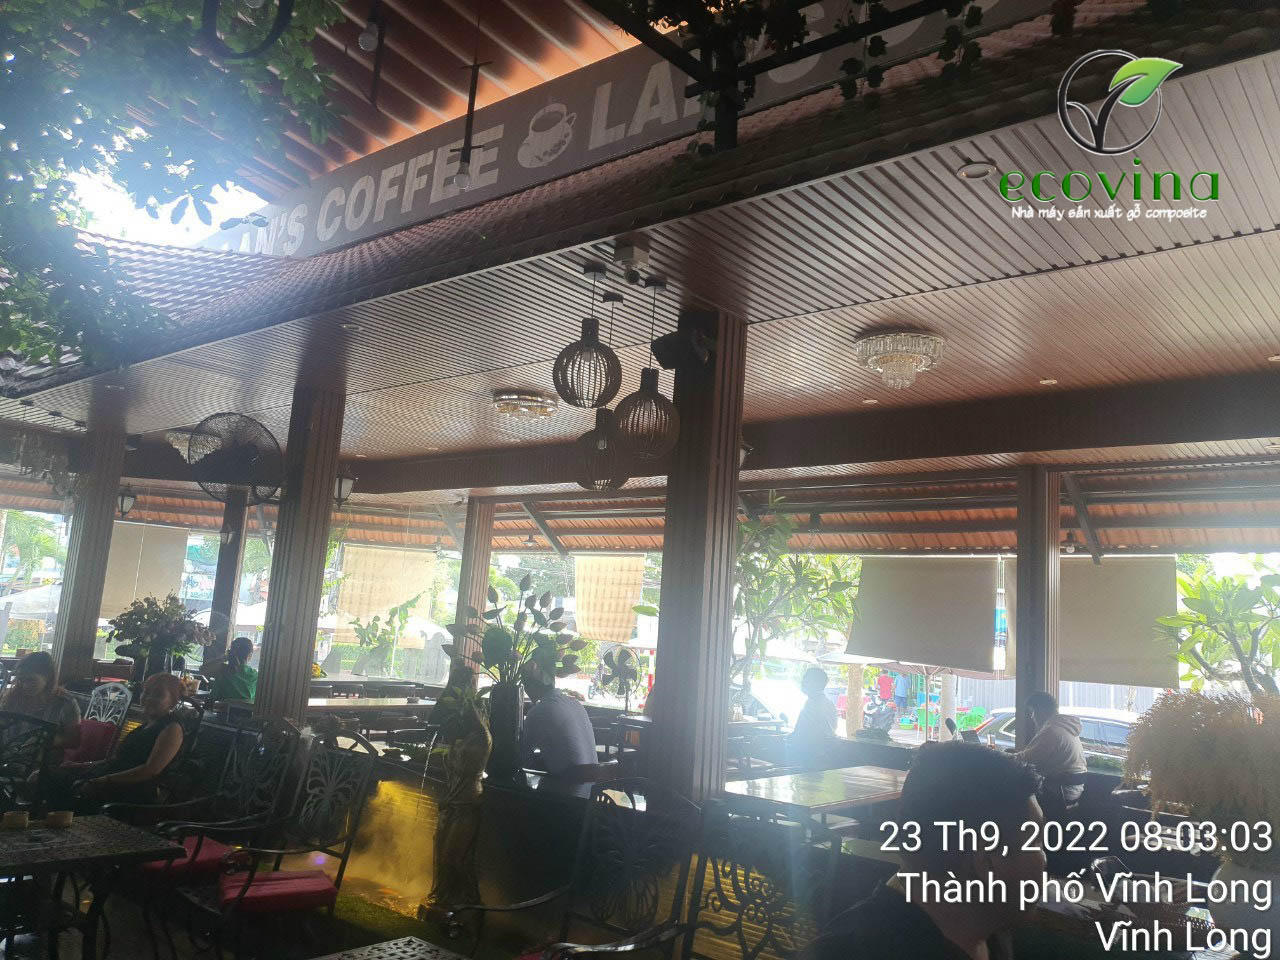 Ecovina sản xuất tấm ốp gỗ nhựa EWOOD - Thi công ốp quán coffee tại Vĩnh Long